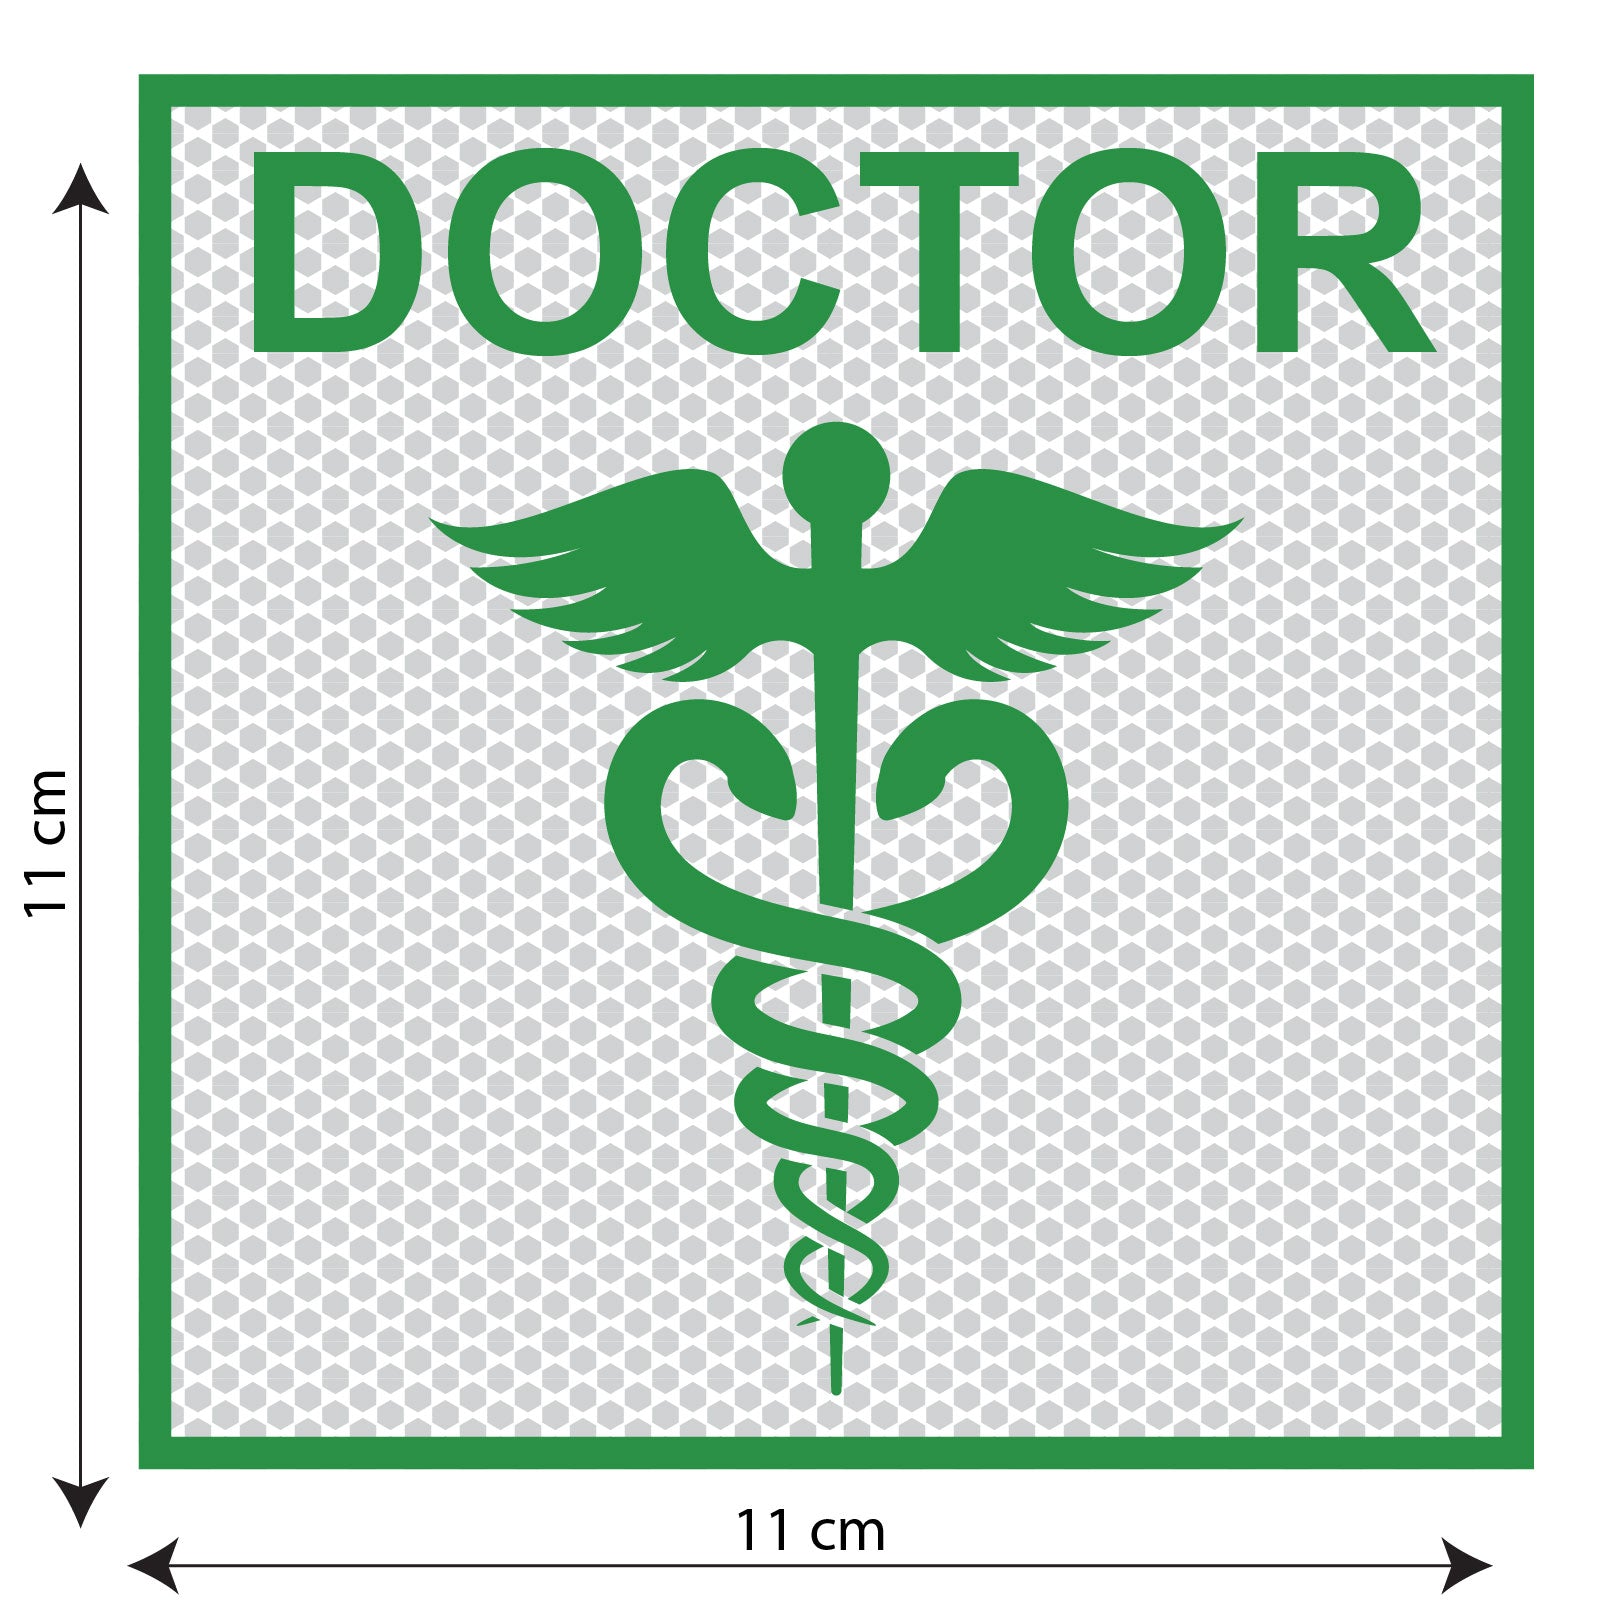 Doctor Plus green logo - stock vector 2757937 | Crushpixel